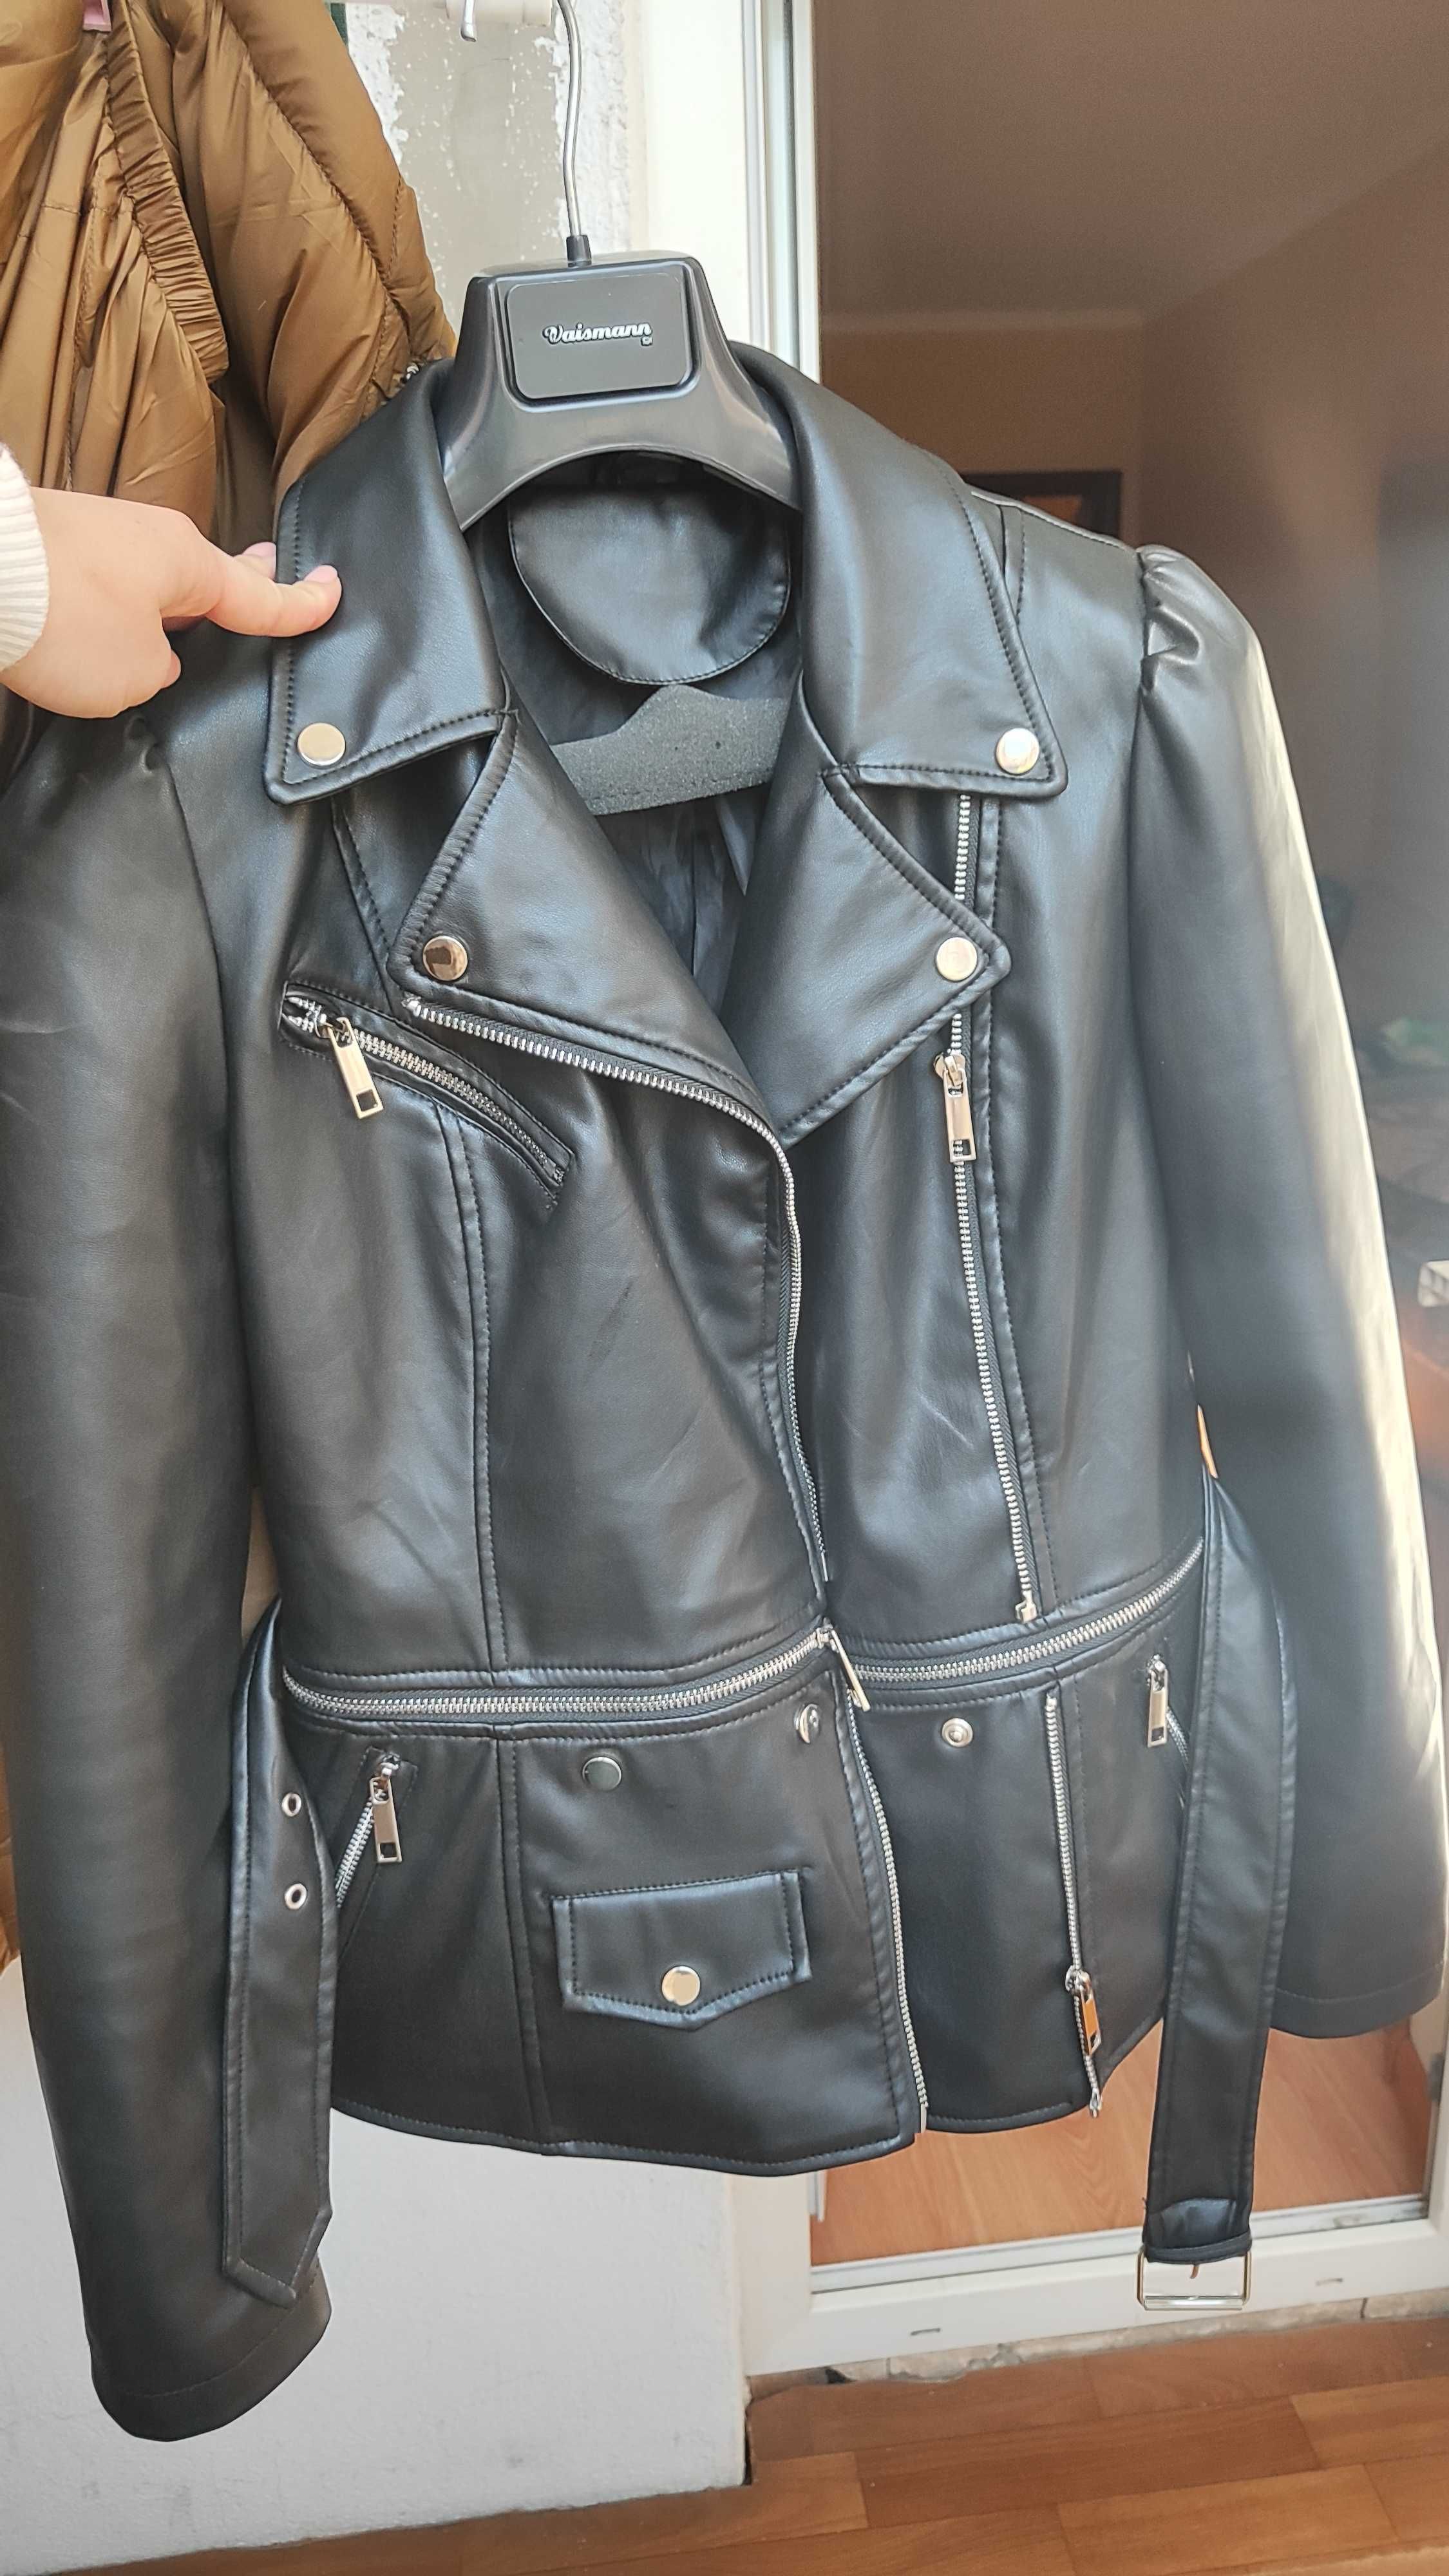 Women's leather jacket - pranceformer